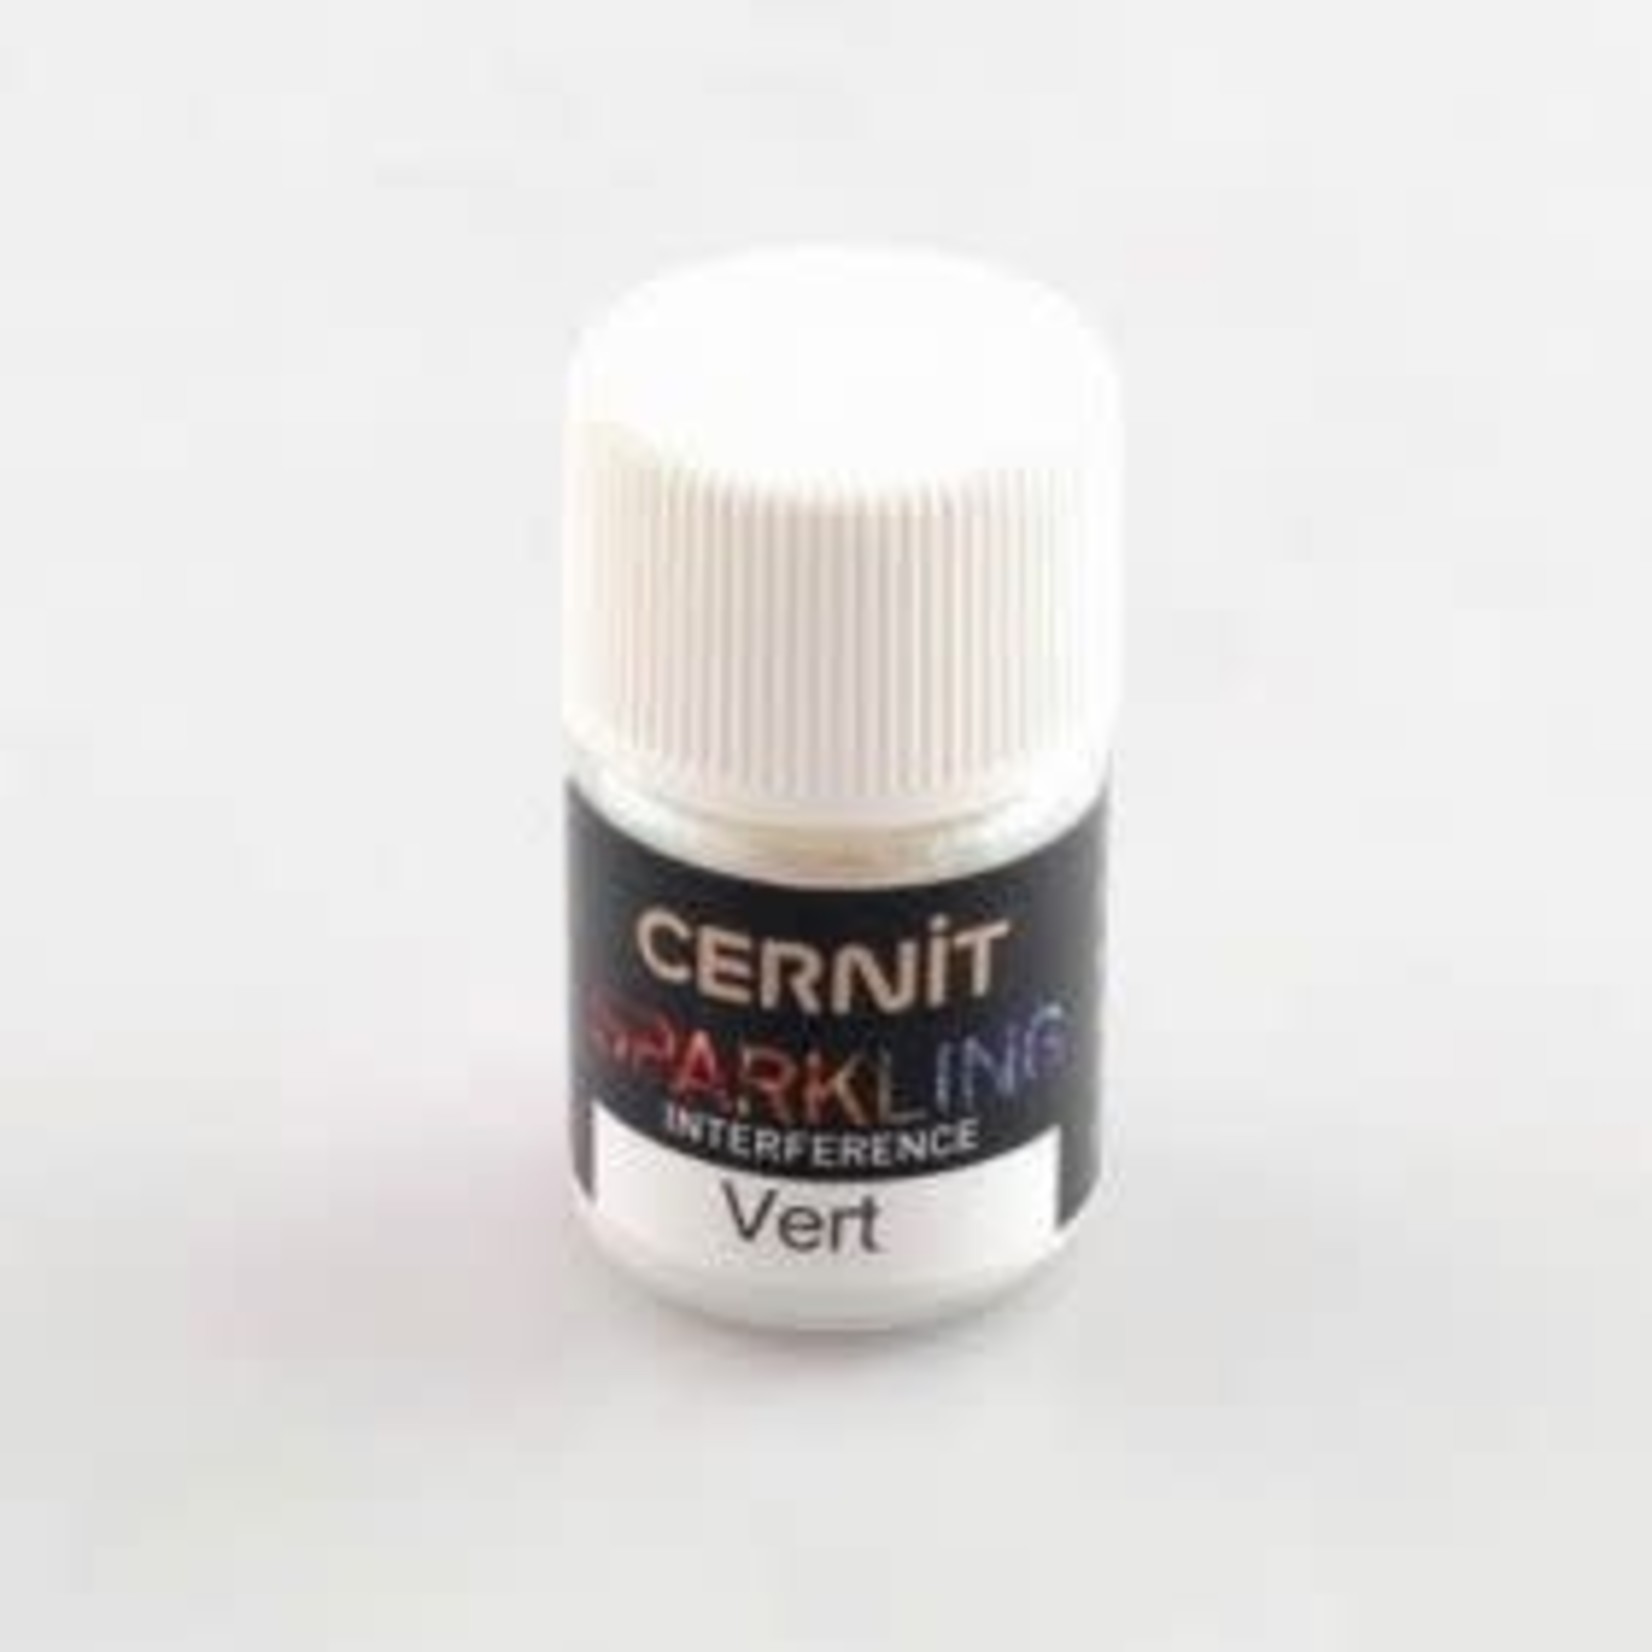 Cernit Cernit Sparkling Interference-Green 5 Gr